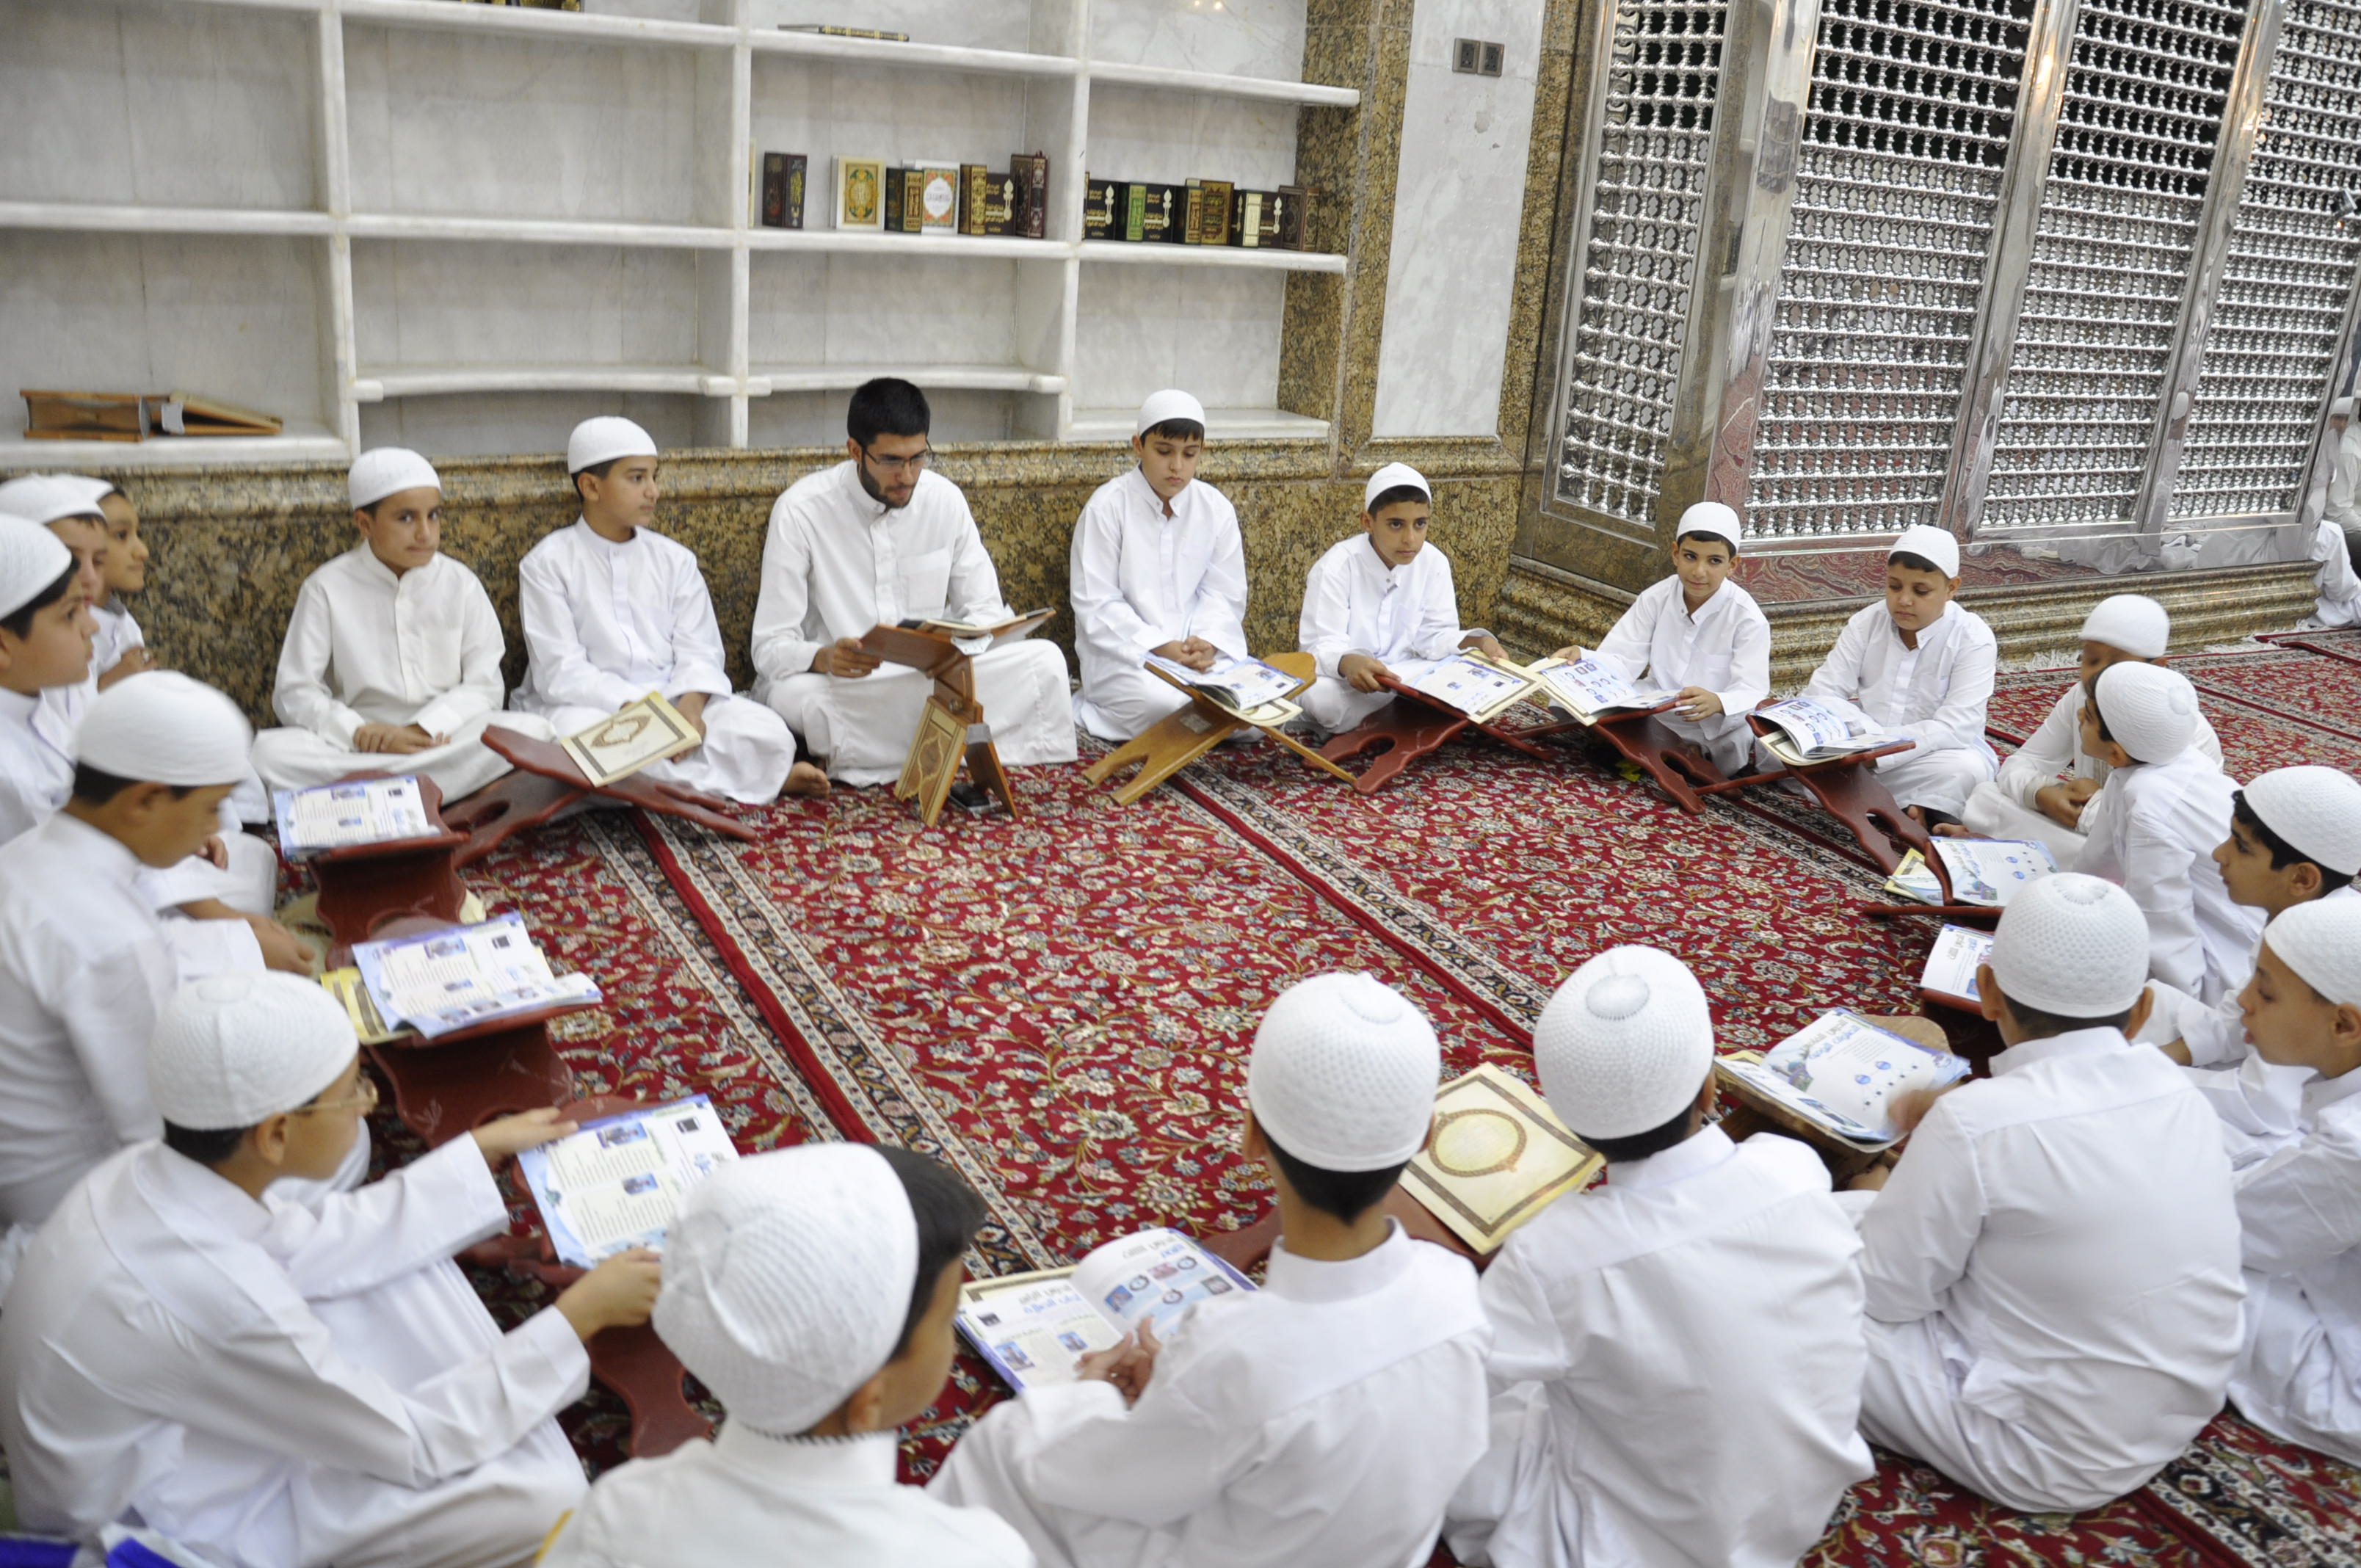 معهد القرآن الكريم في العتبة العباسية المقدسة يُطلق دورته القرآنية الصيفية..